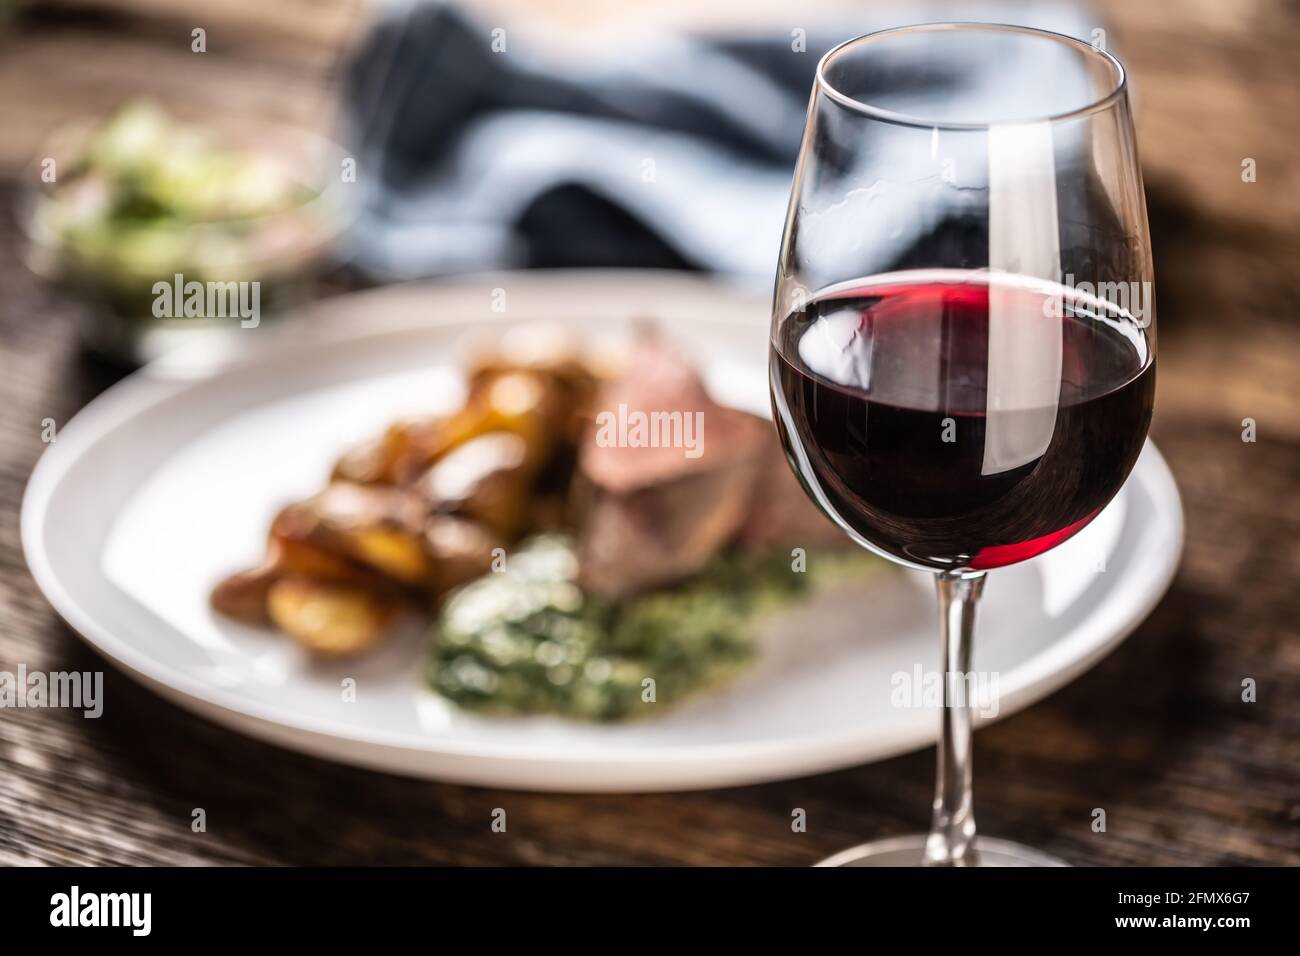 Rotwein als typischer durchschnitt zu einem roten Fleisch sous vide Steak mit gebratenen Kartoffeln, Spinat Dip und frischem Salat auf einem weißen Porzellanteller auf t serviert Stockfoto